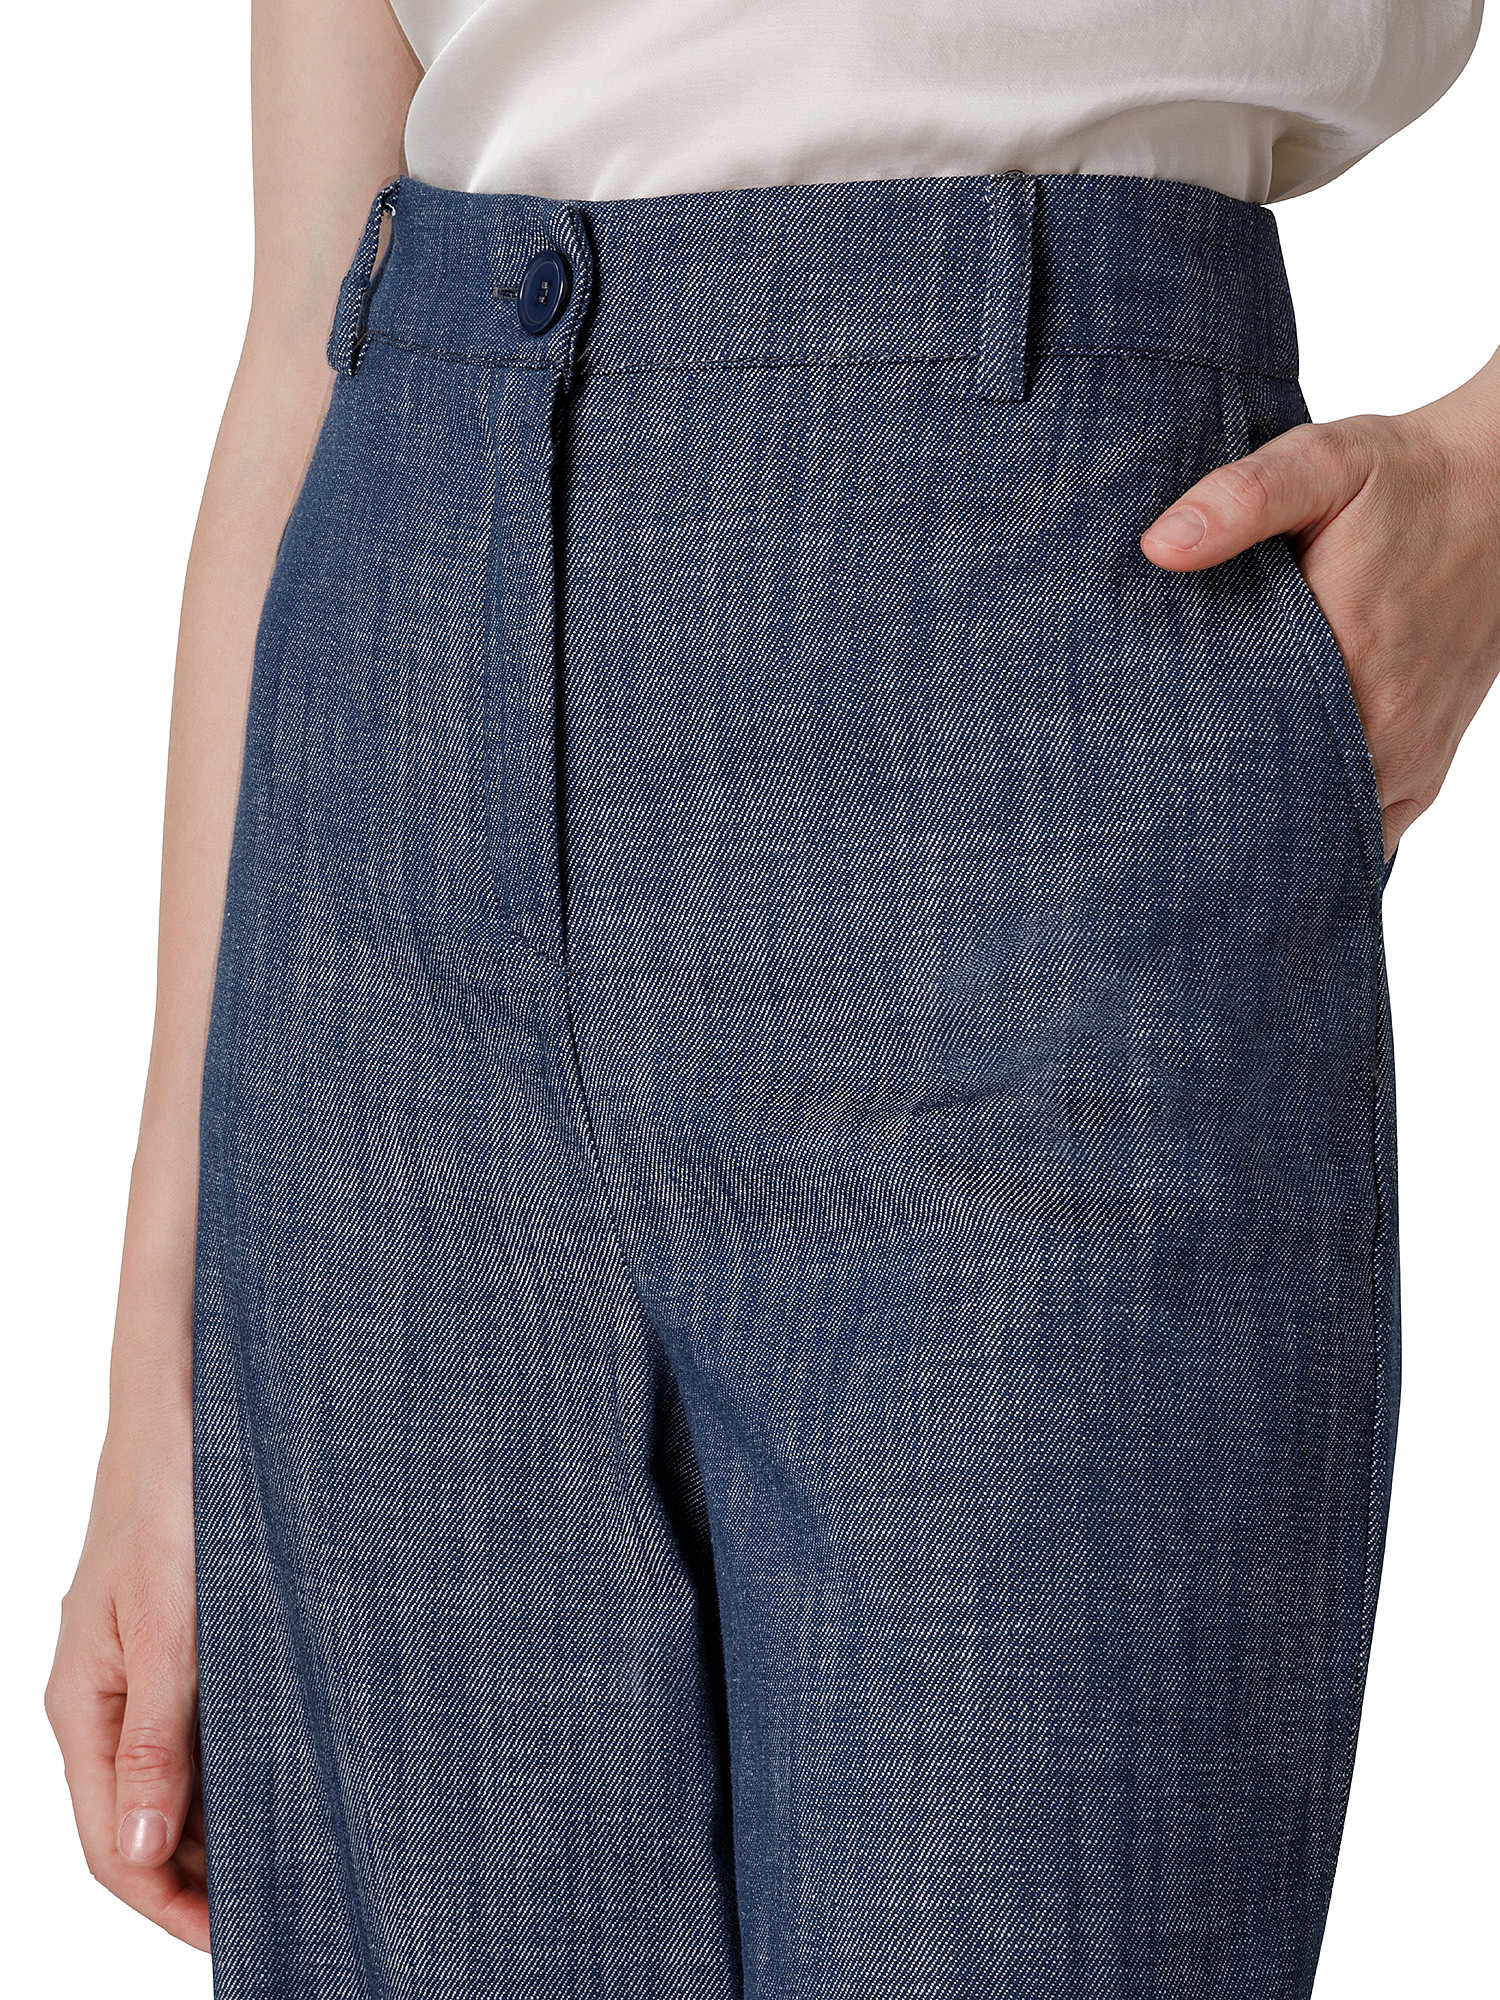 Five-pocket trousers, Denim, large image number 2